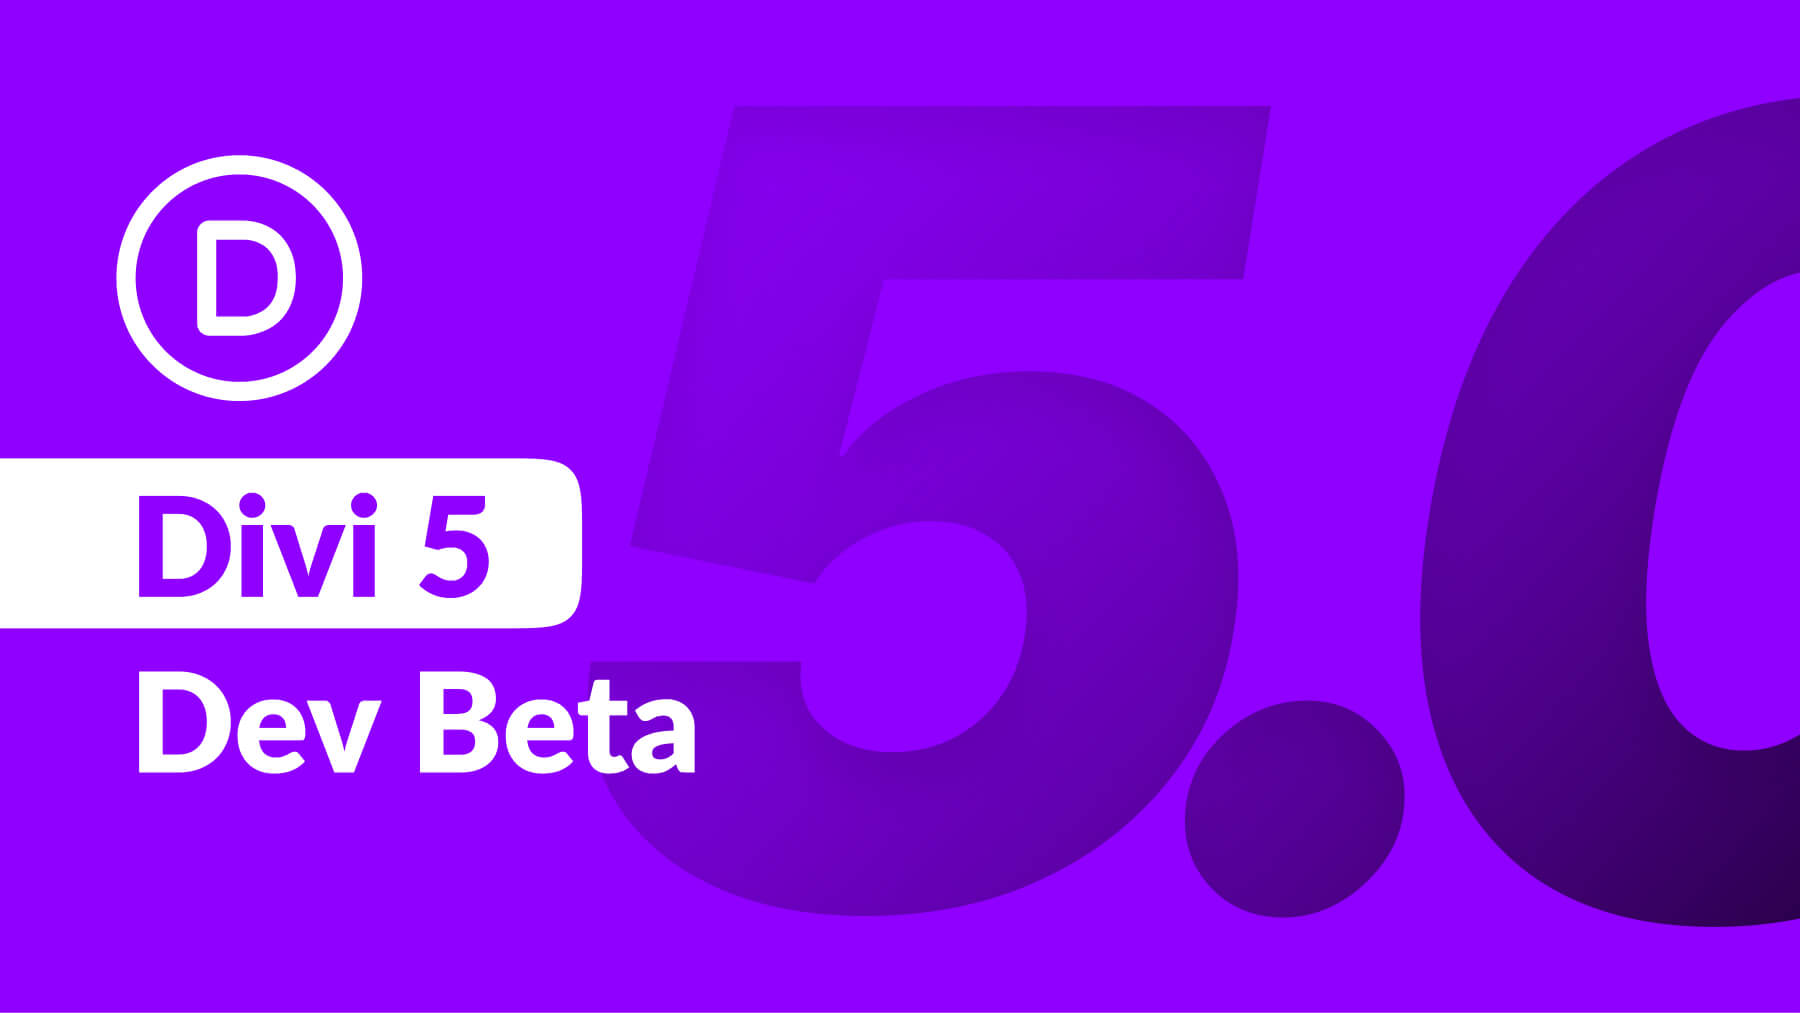 Announcing Divi 5 Dev Beta